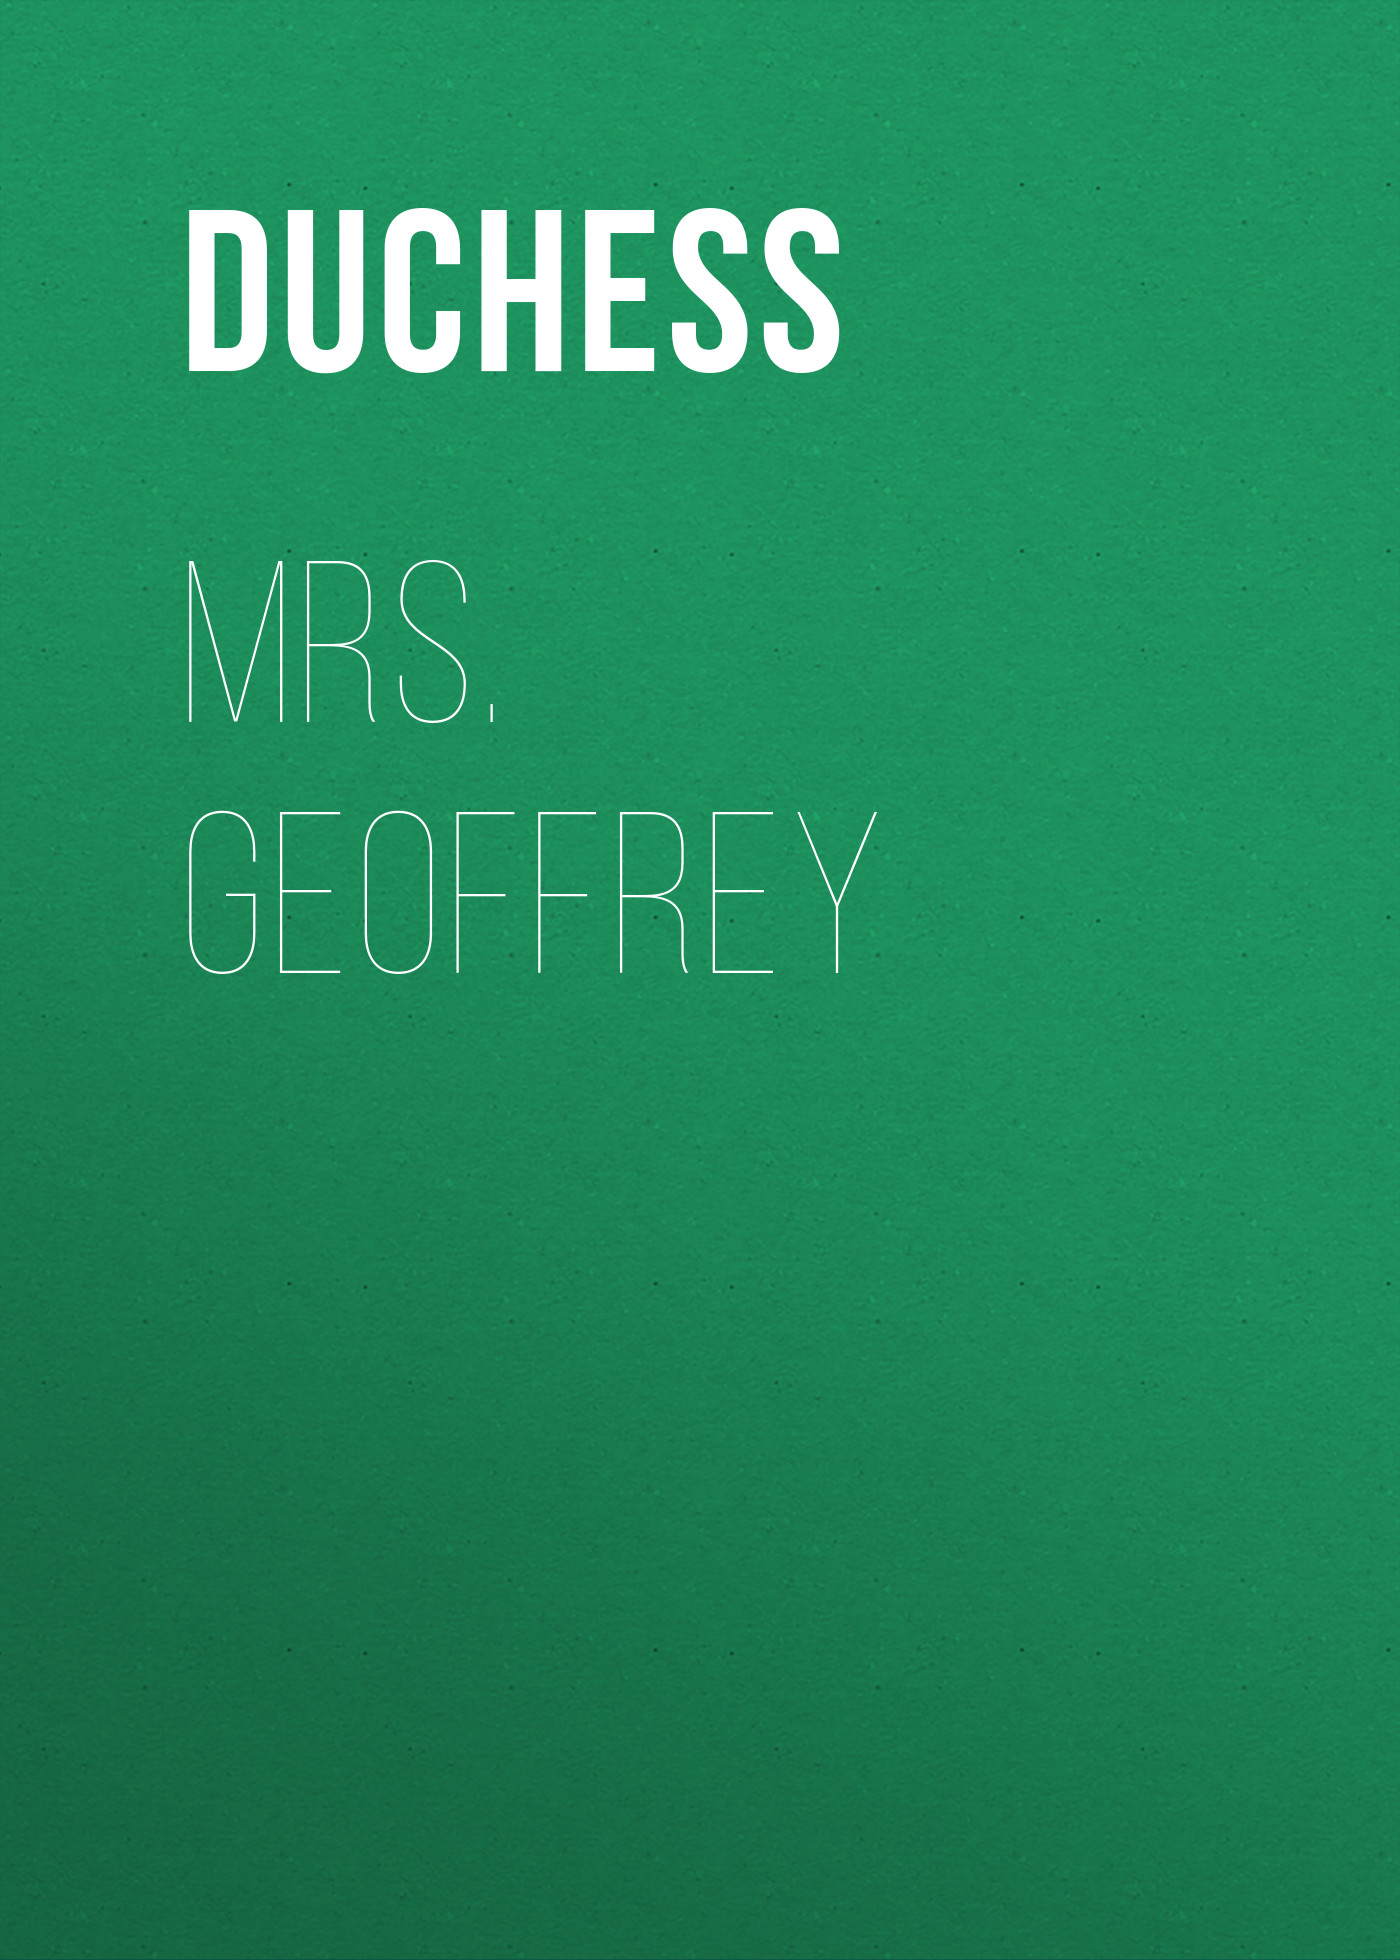 Duchess Mrs. Geoffrey